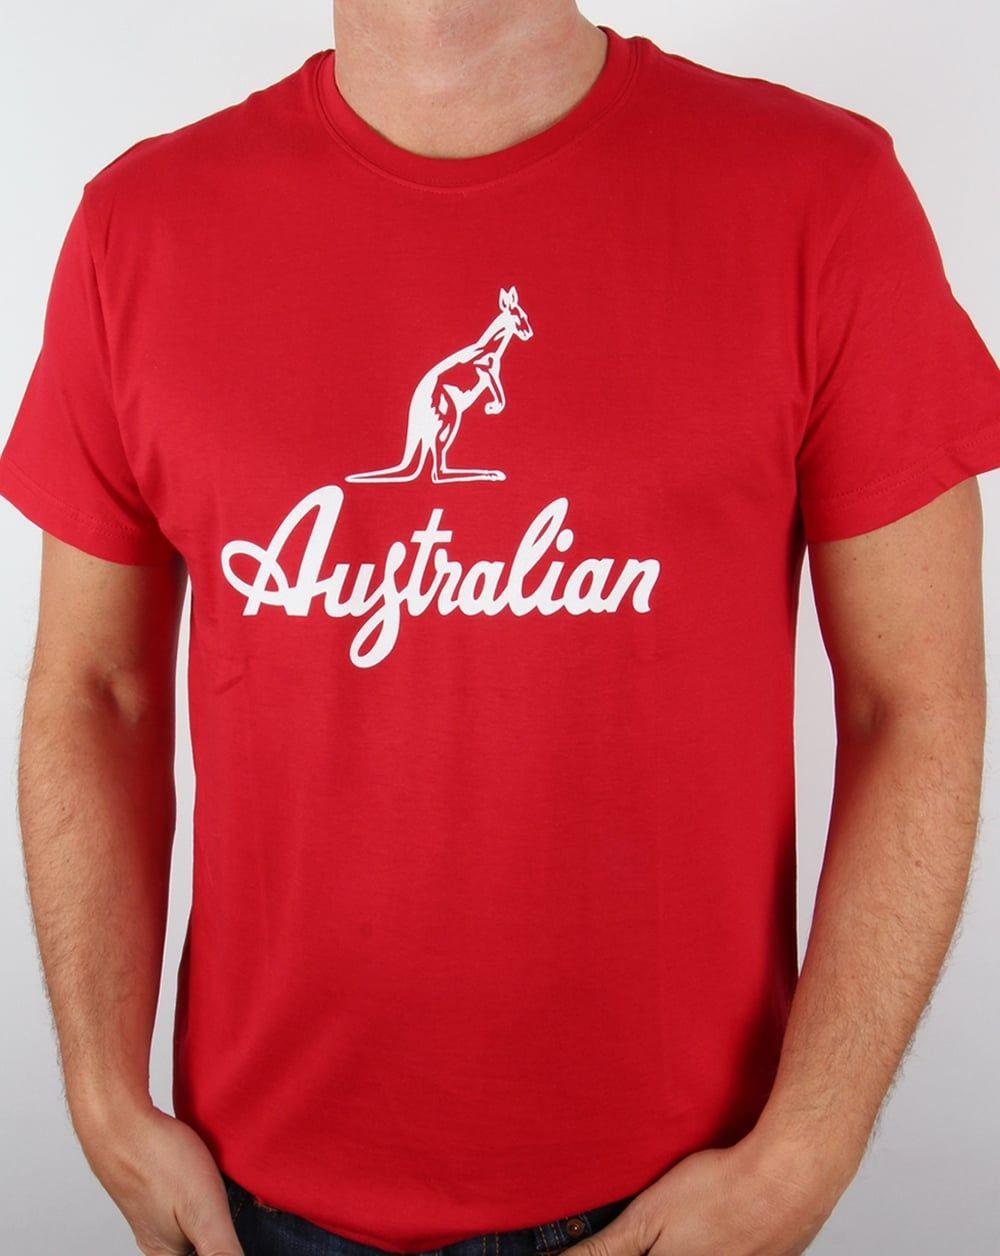 Kangaroo Clothing Logo - australian logo carrier tee